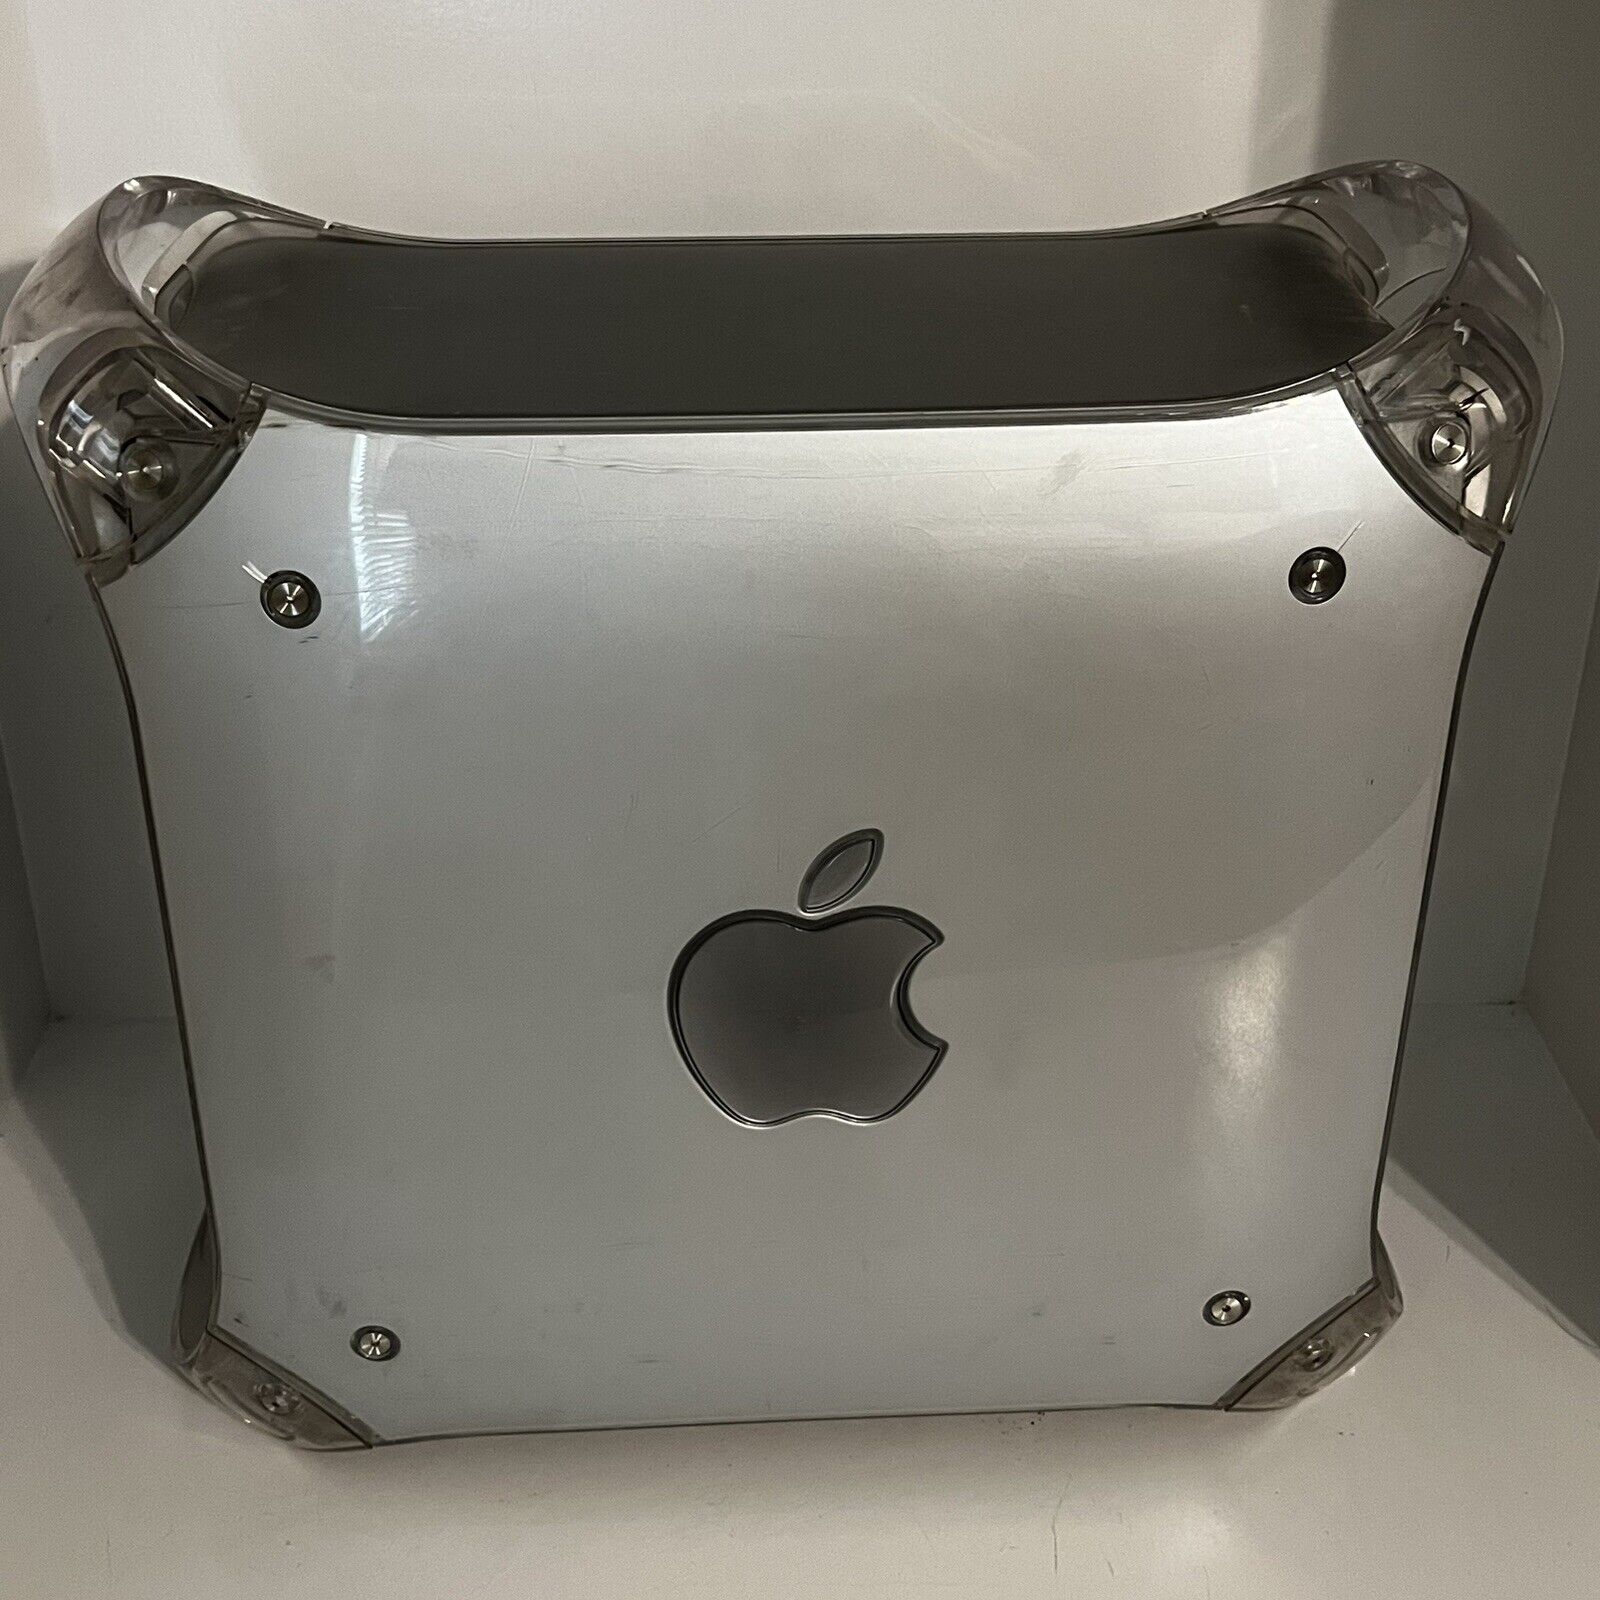 Apple PowerMac Power Macintosh G4 Mac M8493 Untested As Is